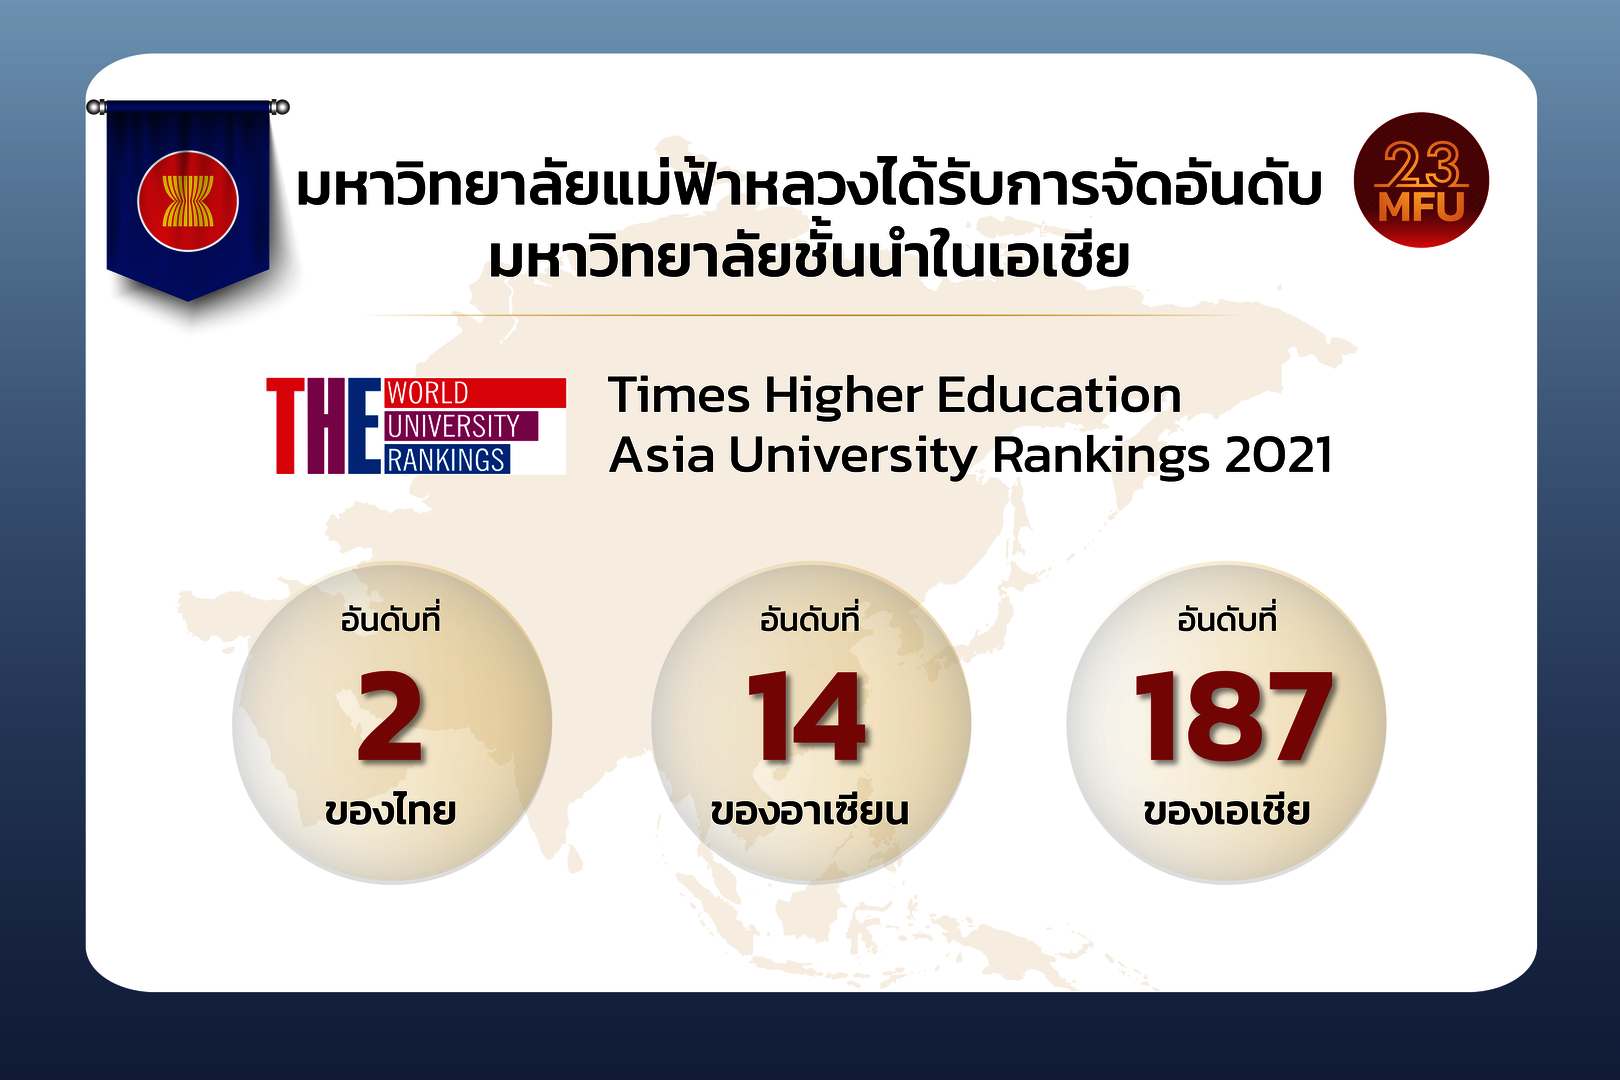 มฟล. ครองอันดับ 2 มหาวิทยาลัยที่ดีที่สุดในไทย และเป็นอันดับ 1 ของไทยด้านการอ้างอิงผลงานการวิจัยและความเป็นนานาชาติ จาก THE Asia University Rankings 2021